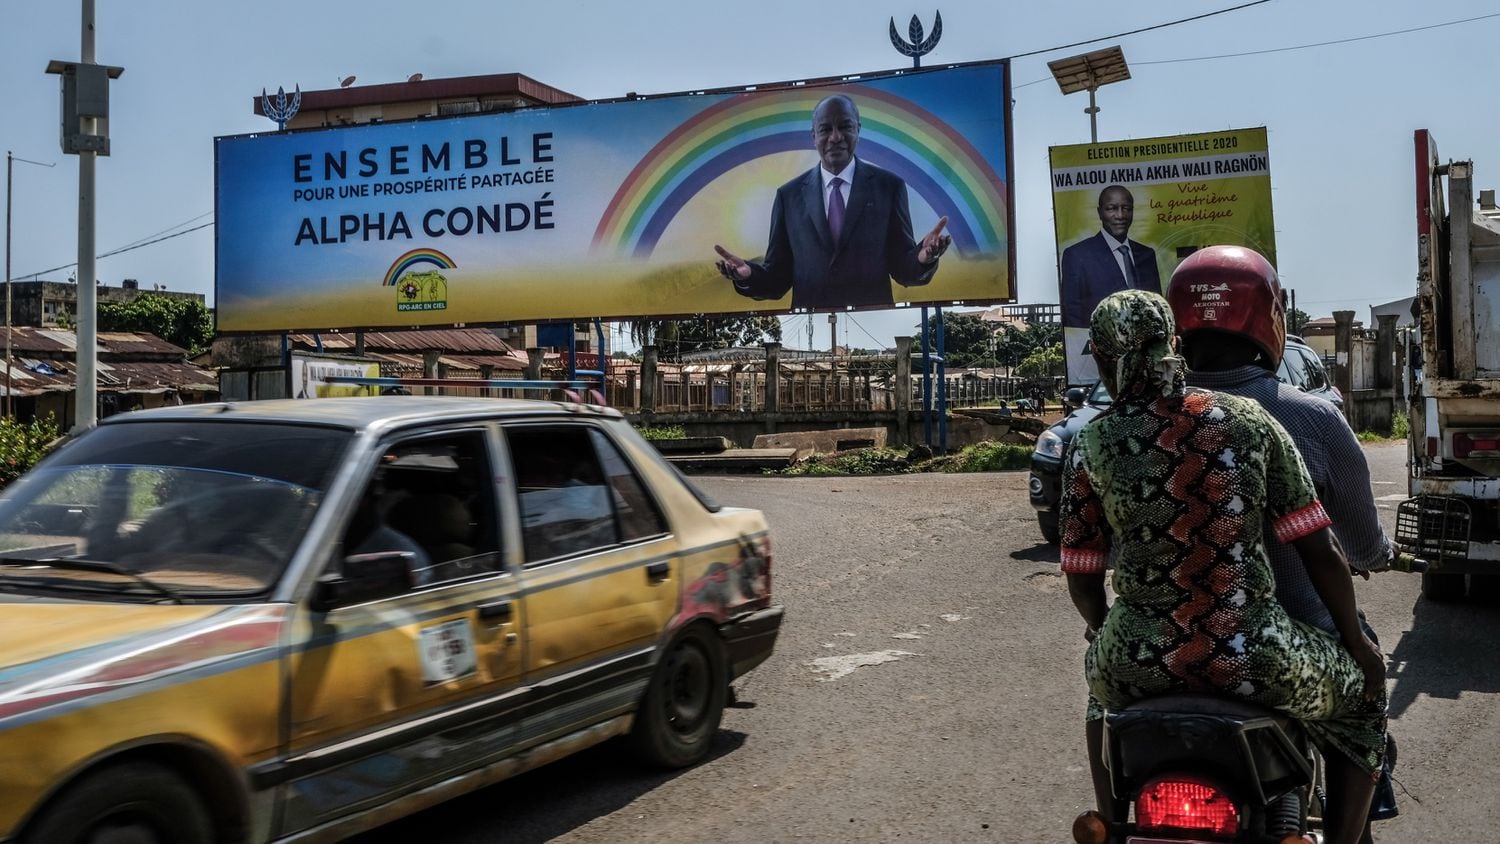 09/10/2020 Un cartel electoral del presidente, Alpha Condé, en Conakry
POLITICA AFRICA GUINEA INTERNACIONAL
SADAK SOUICI / ZUMA PRESS / CONTACTOPHOTO
